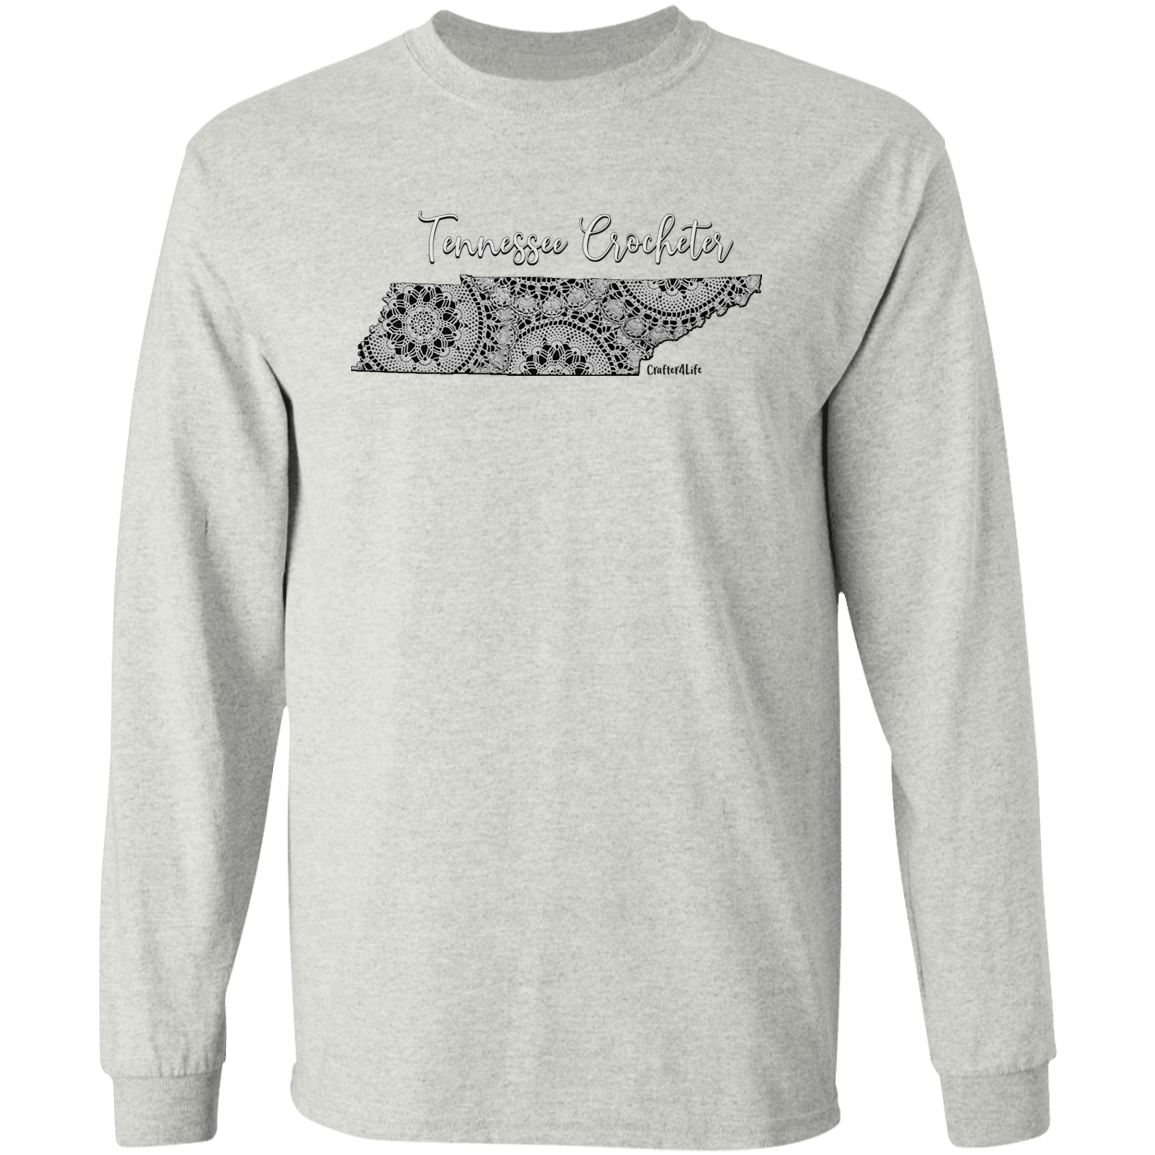 Tennessee Crocheter LS Ultra Cotton T-Shirt